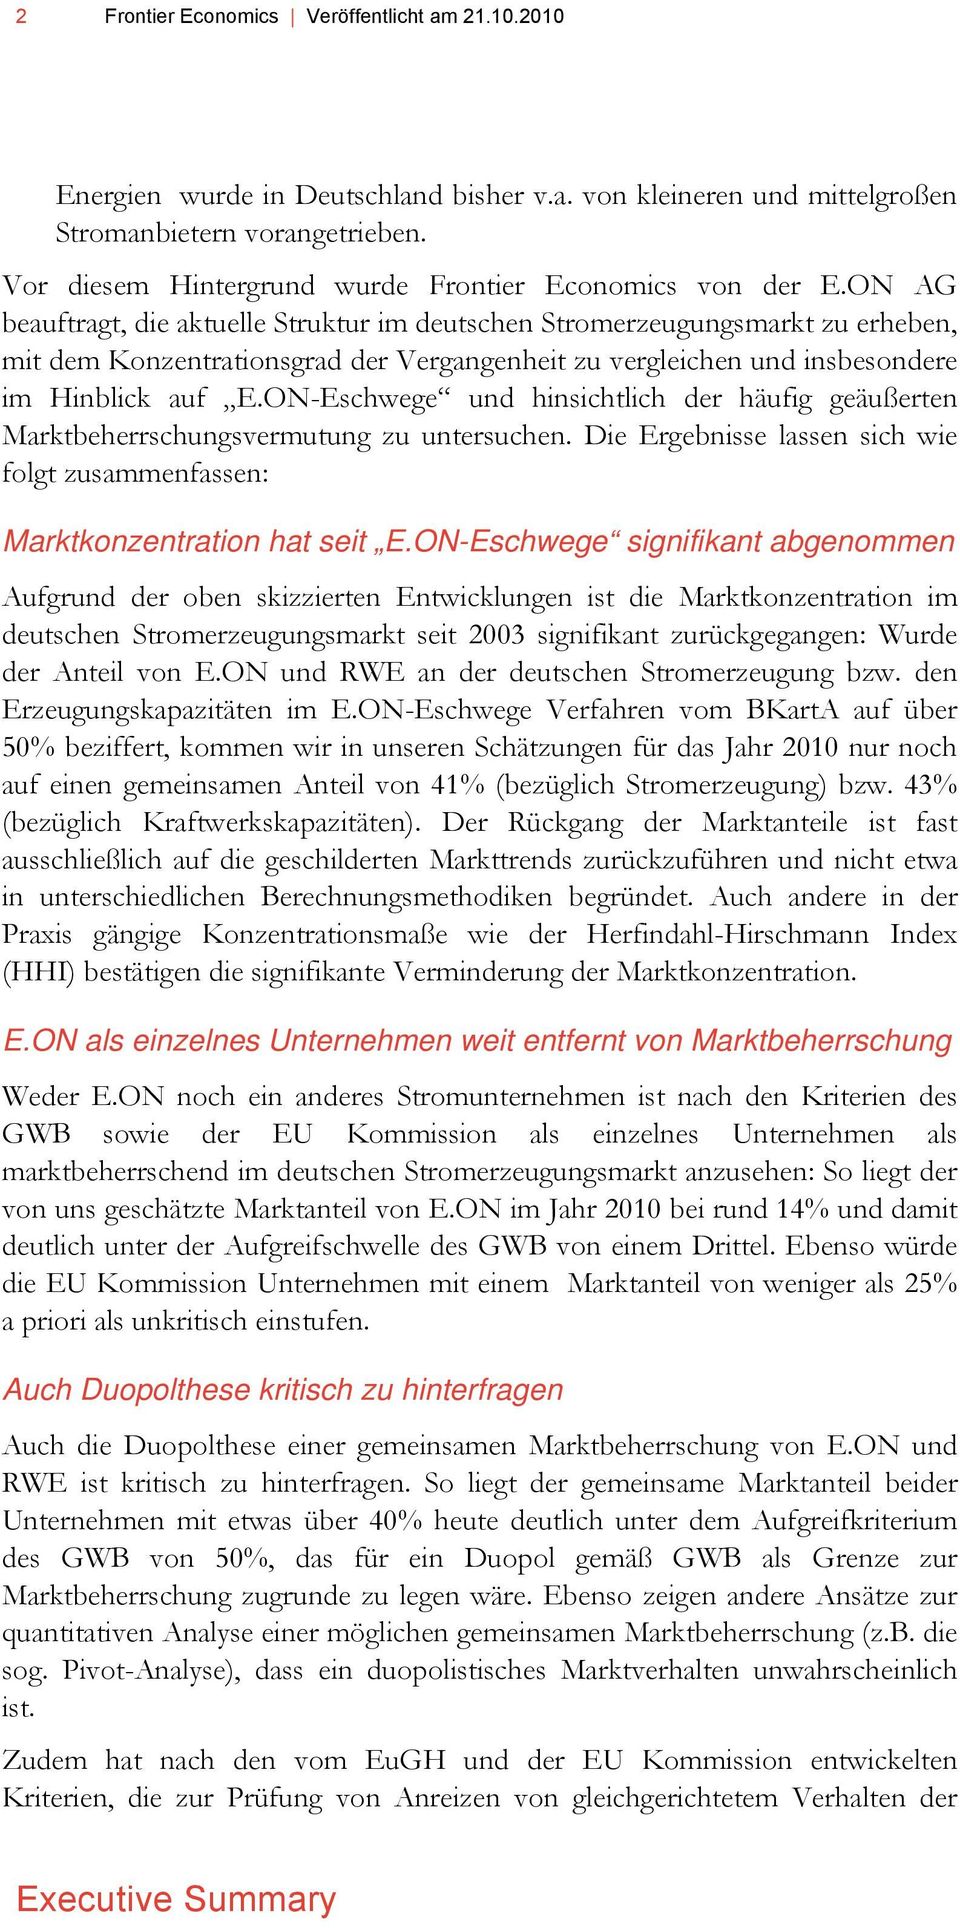 ON AG beauftragt, die aktuelle Struktur im deutschen Stromerzeugungsmarkt zu erheben, mit dem Konzentrationsgrad der Vergangenheit zu vergleichen und insbesondere im Hinblick auf E.